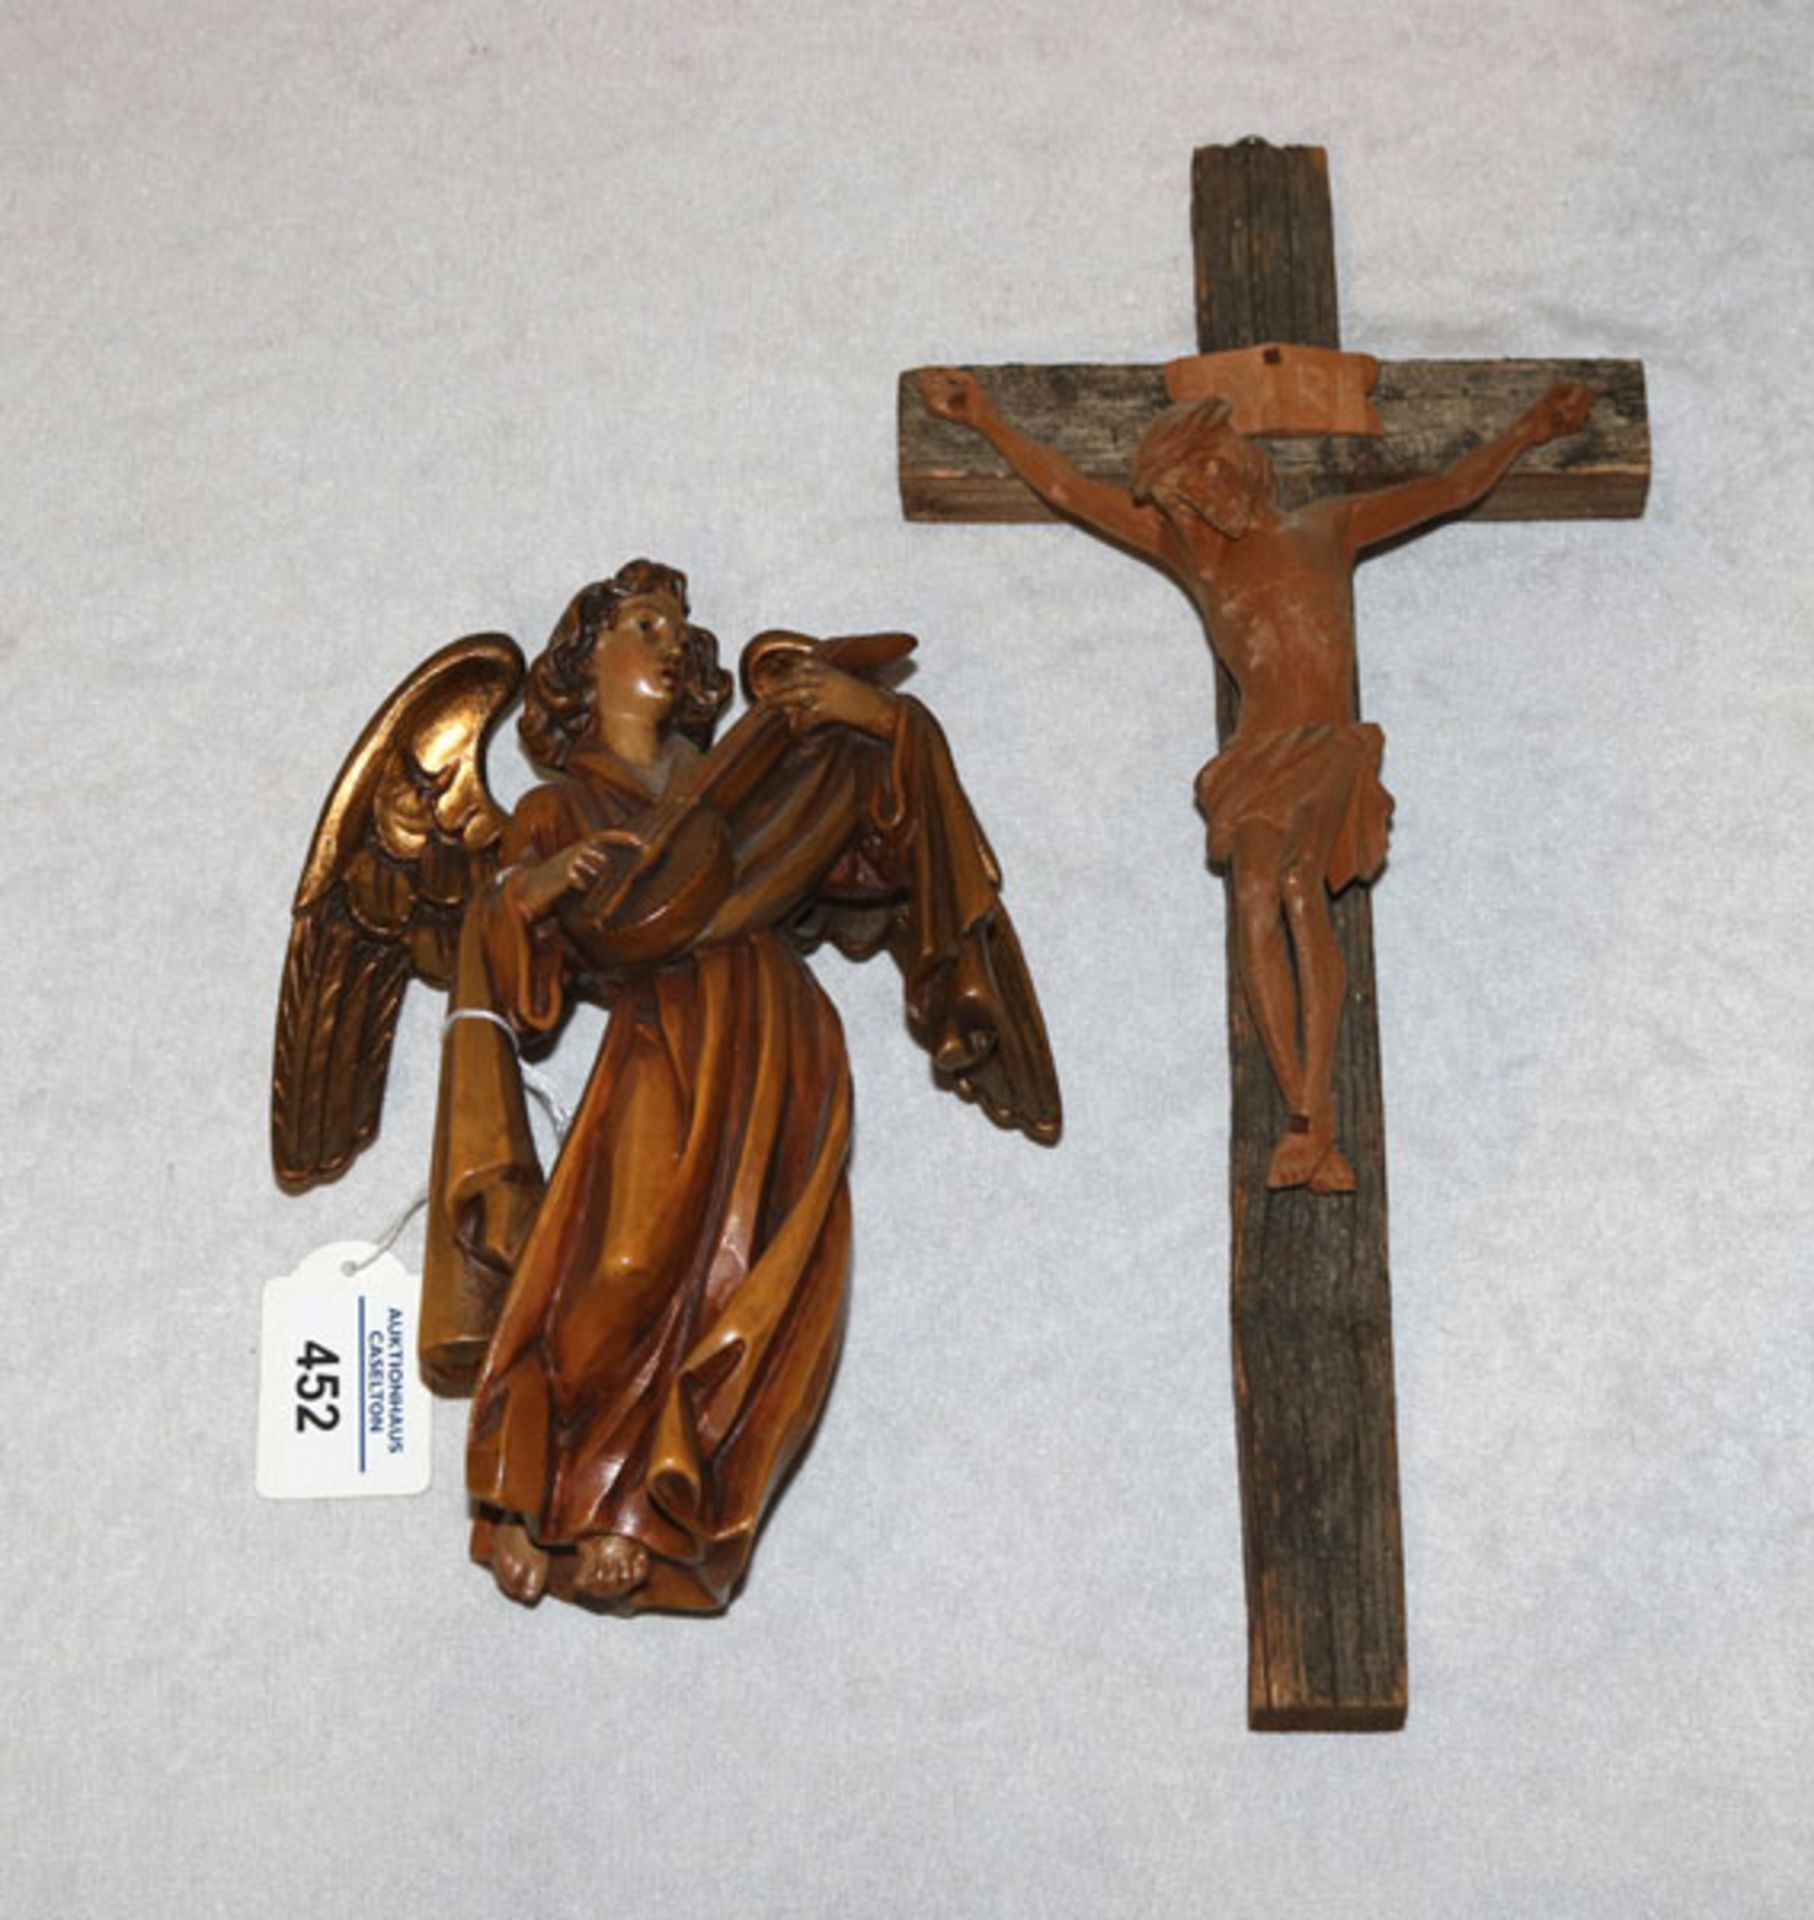 Holz Figurenskulptur 'Musizierender Engel', teils Gold gefaßt, H20 cm, und Holzkreuz mit